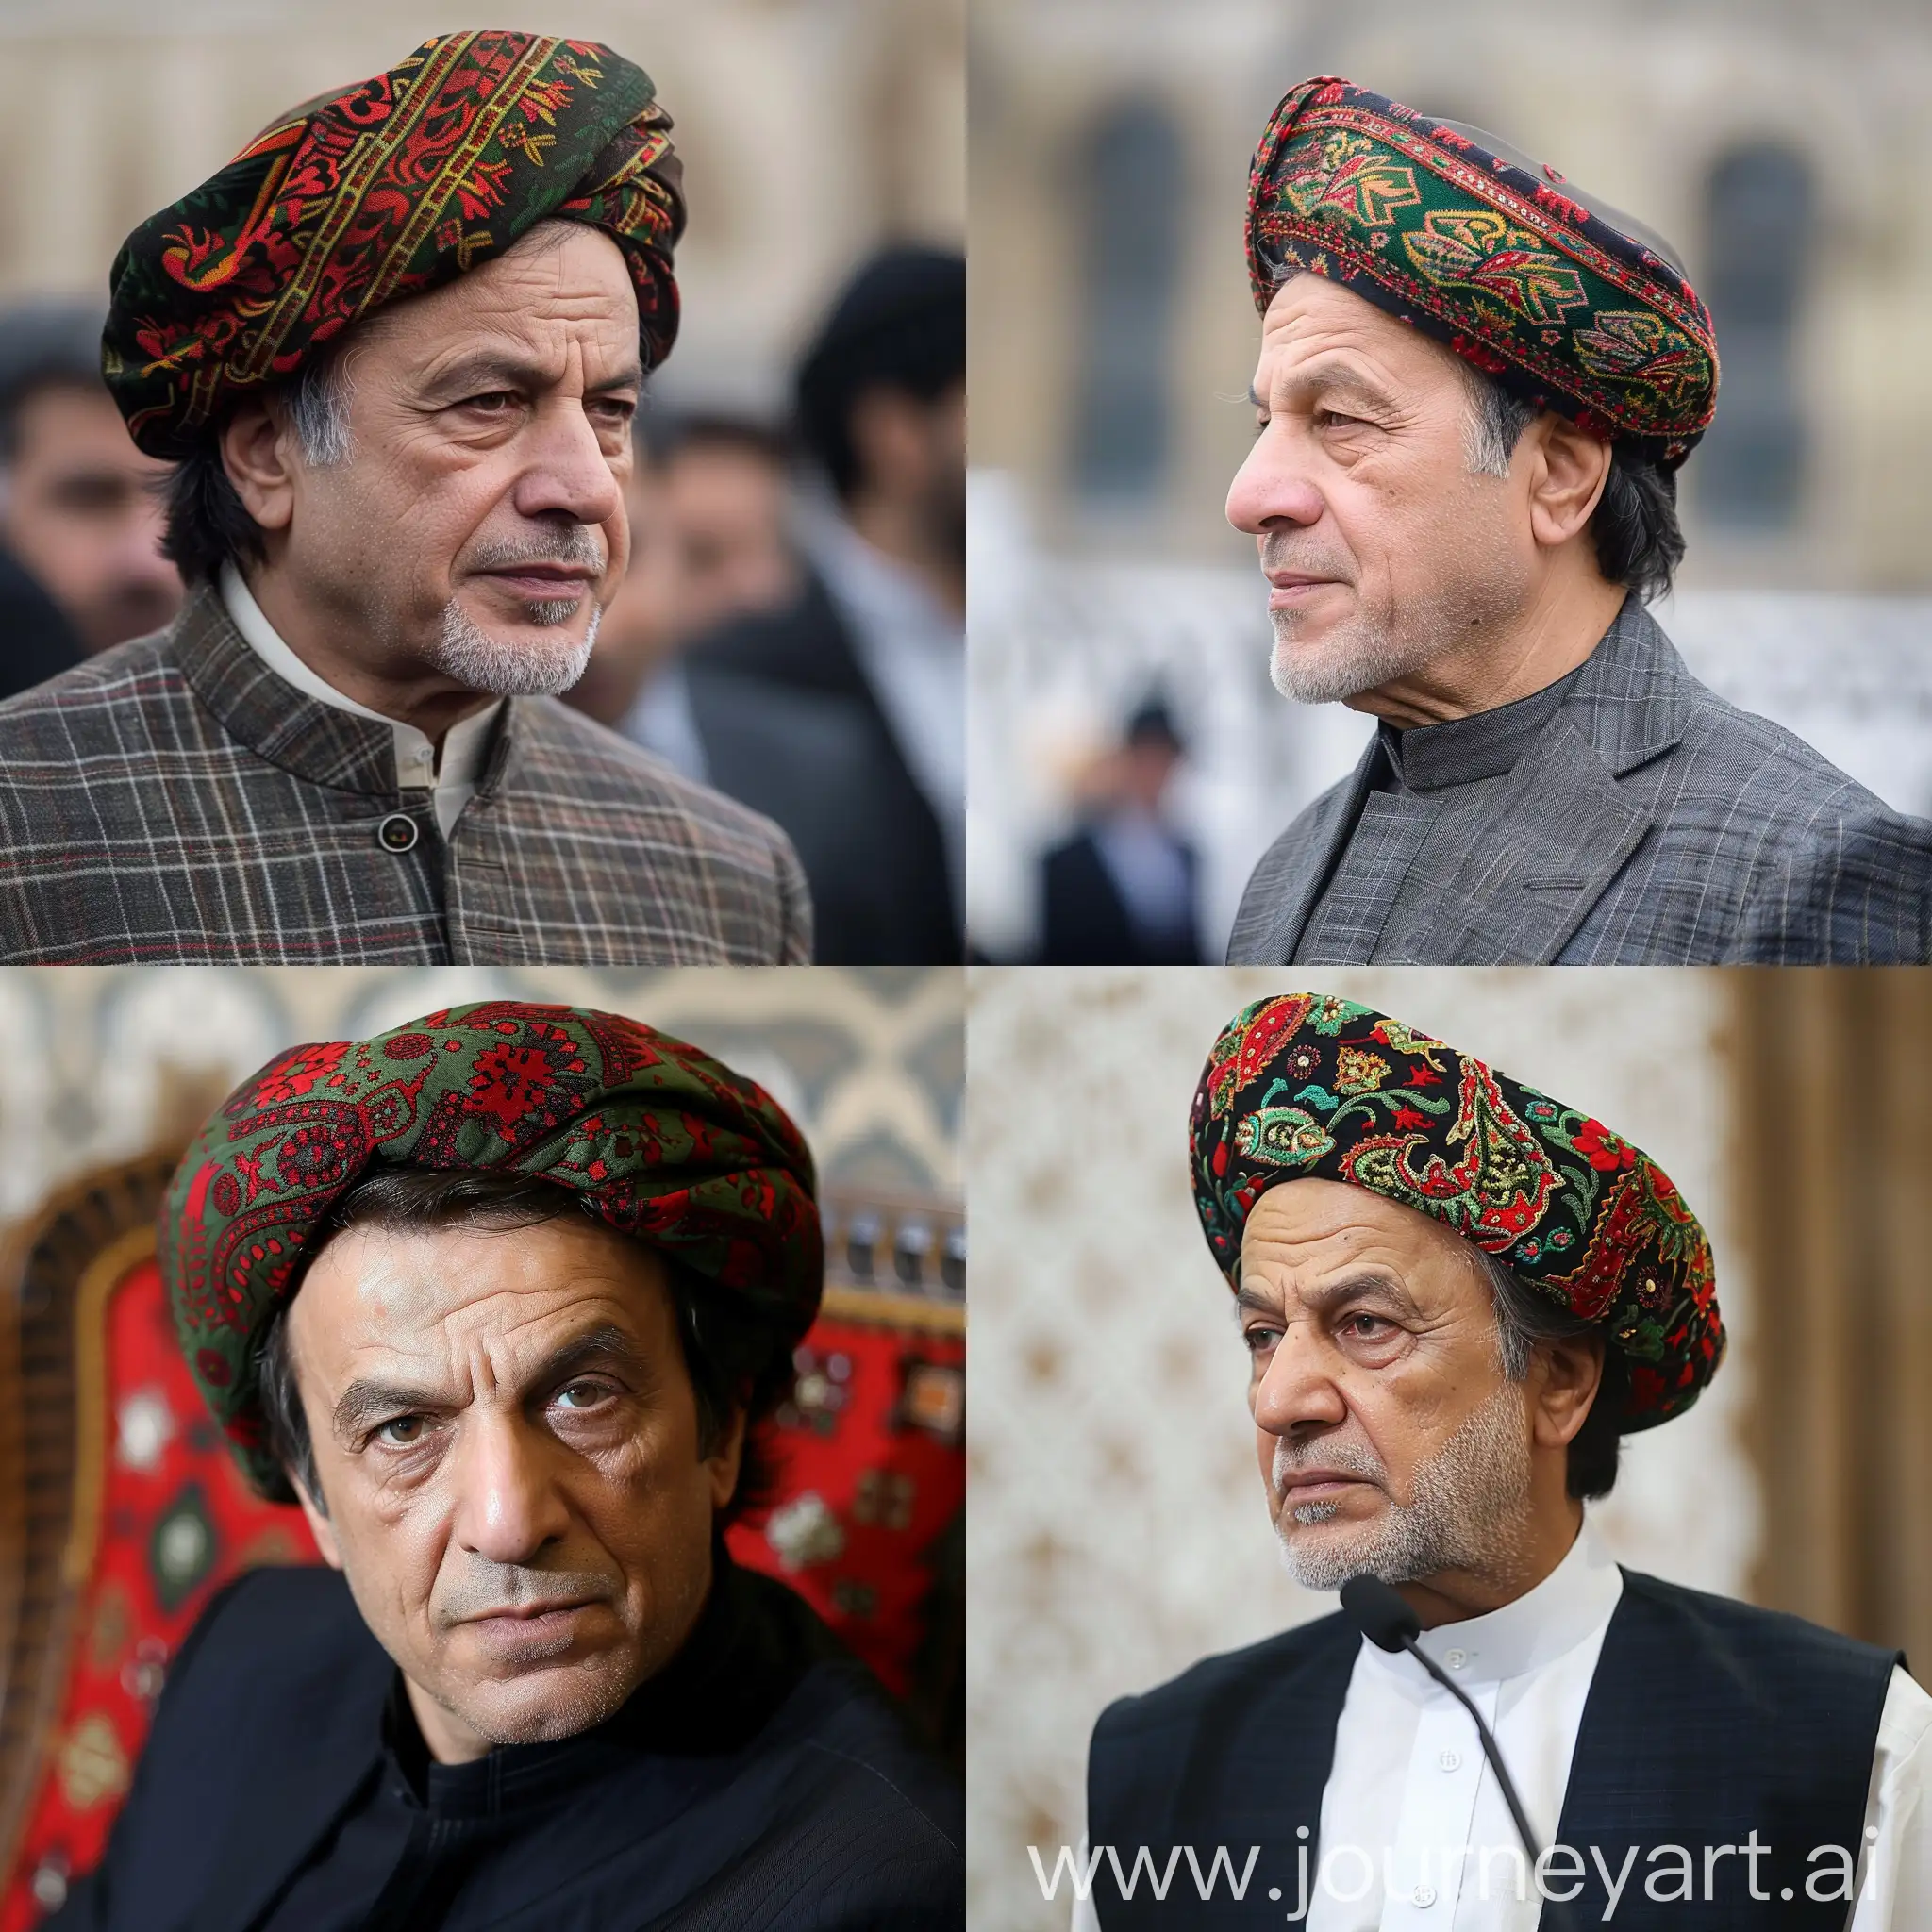 Imran-Khan-Wearing-a-Head-Cap-Portrait